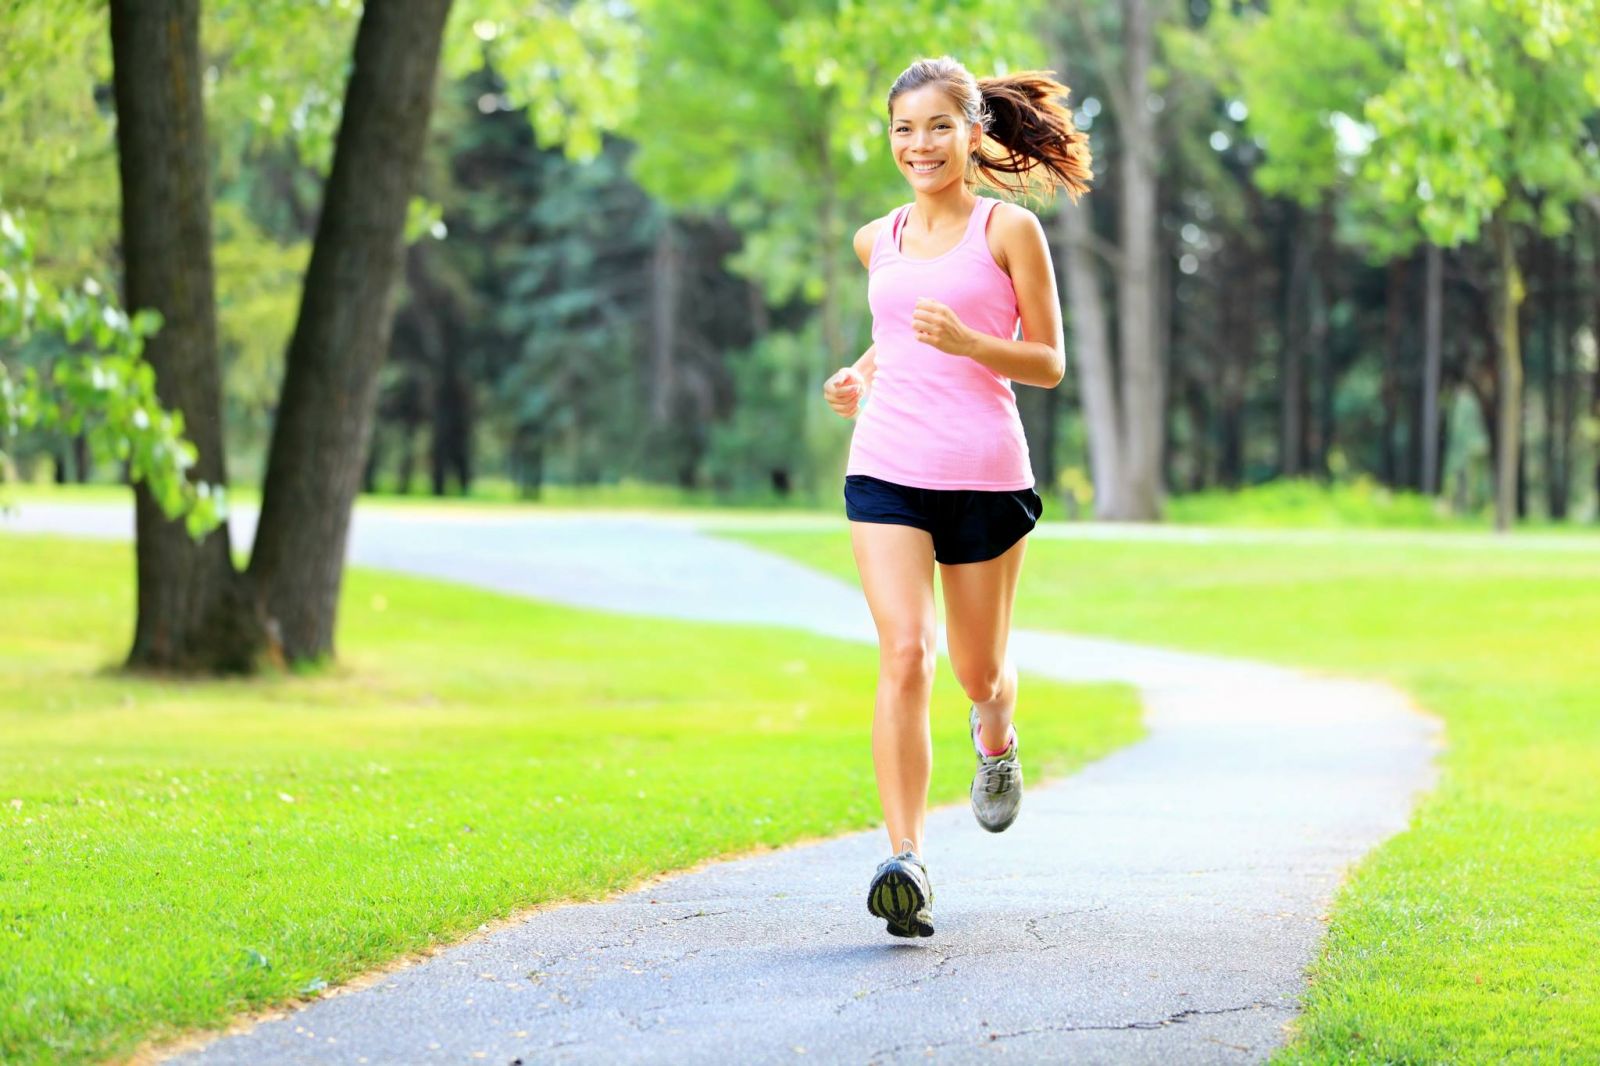 Chia sẻ những cách chạy bộ giúp giảm cân hiệu quả và nhanh chóng